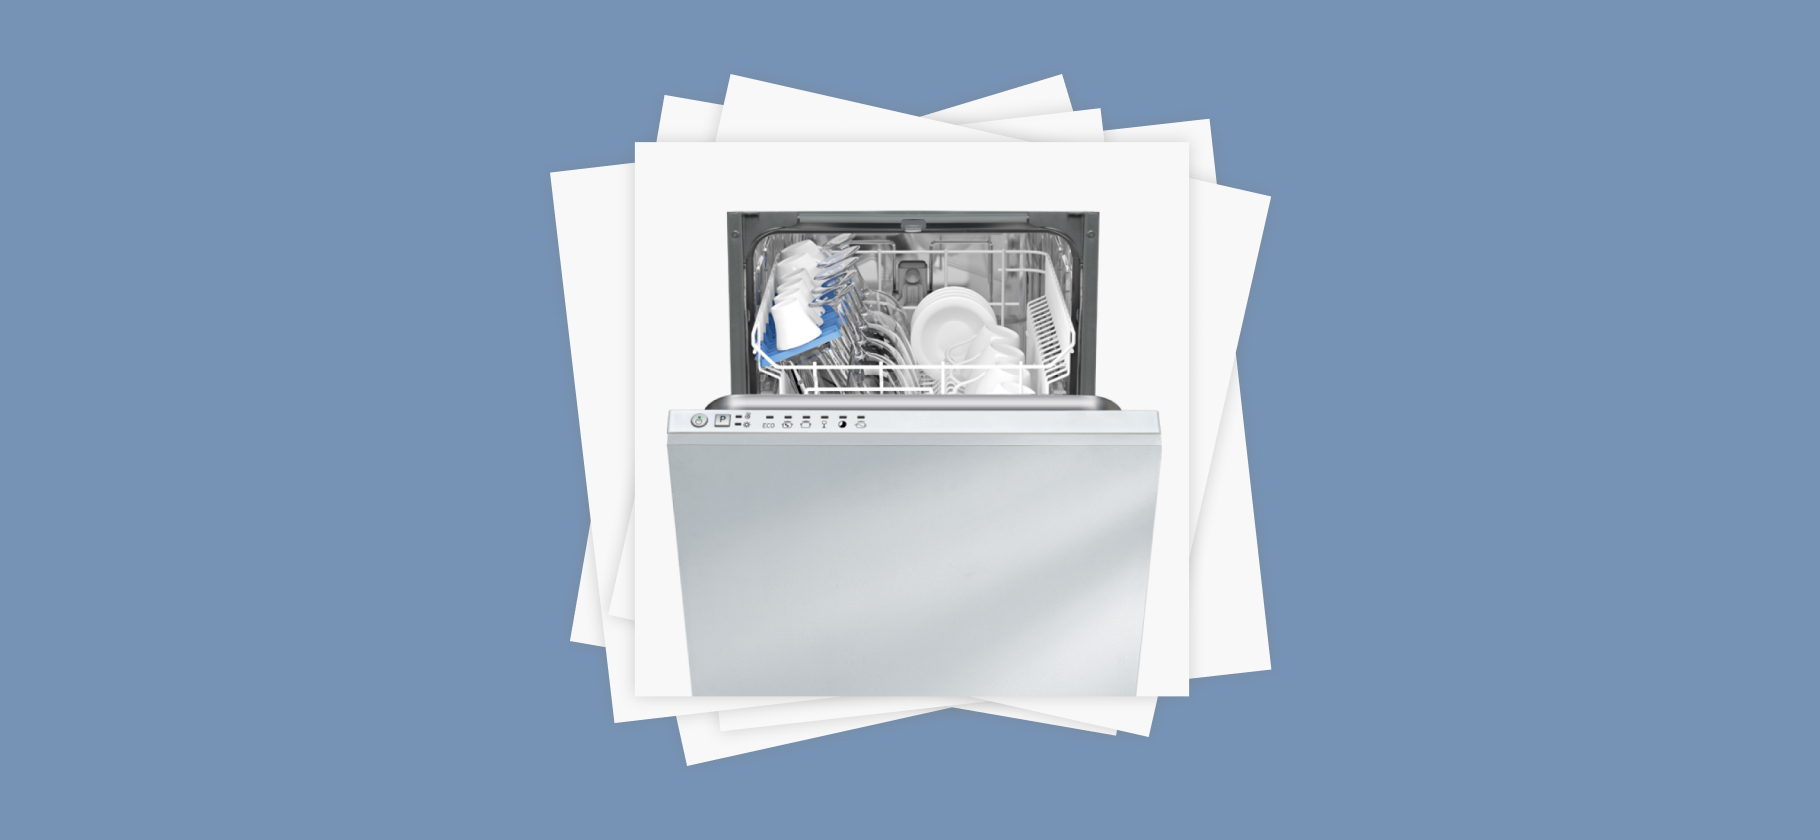 «Техника для лентяев»: 12 причин не покупать посудомоечную машину